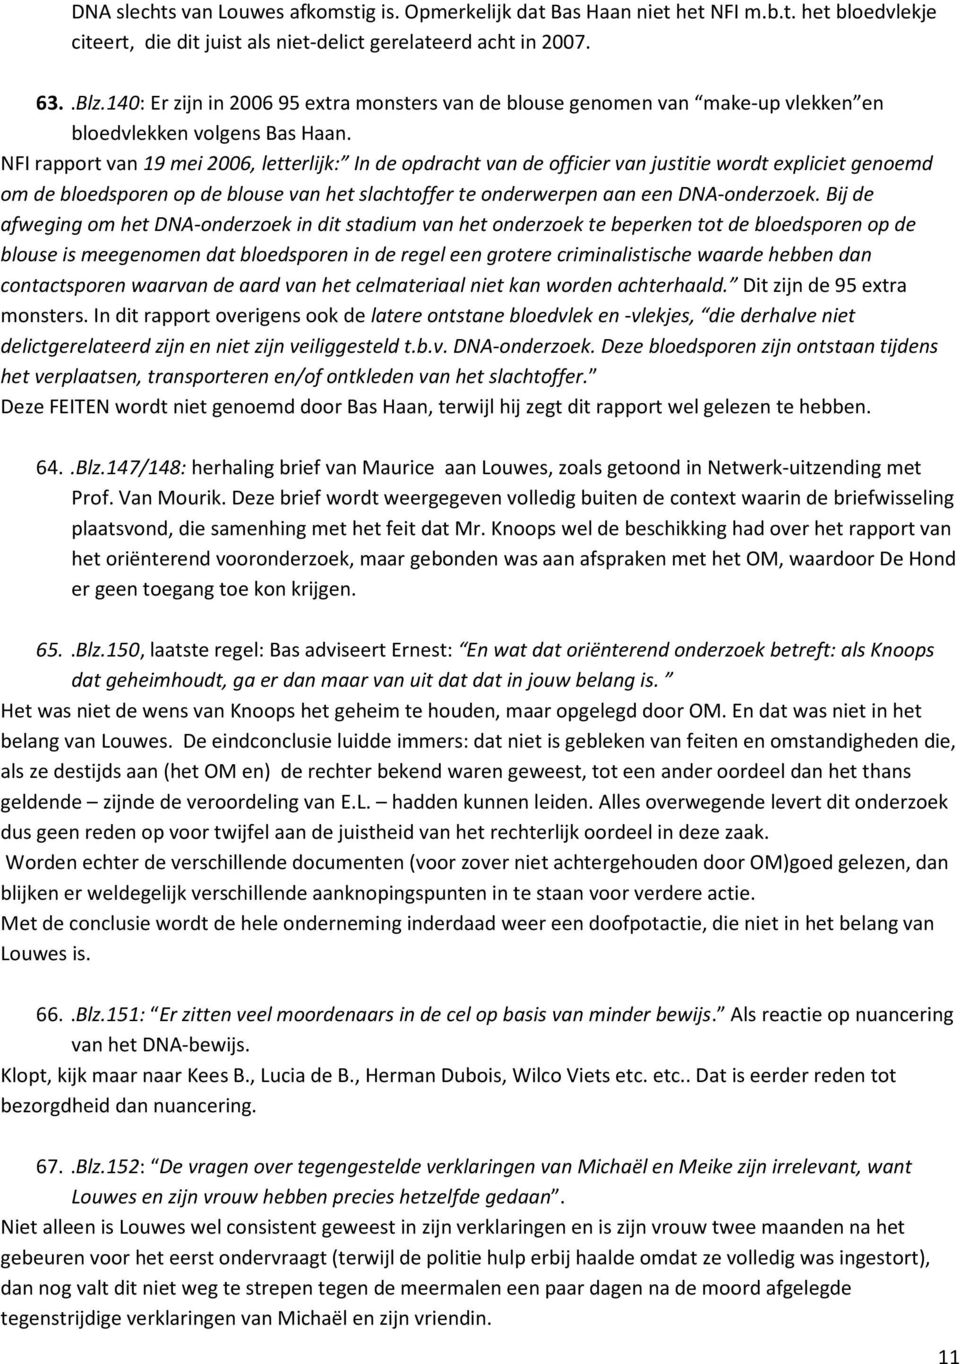 NFI rapport van 19 mei 2006, letterlijk: In de opdracht van de officier van justitie wordt expliciet genoemd om de bloedsporen op de blouse van het slachtoffer te onderwerpen aan een DNA-onderzoek.